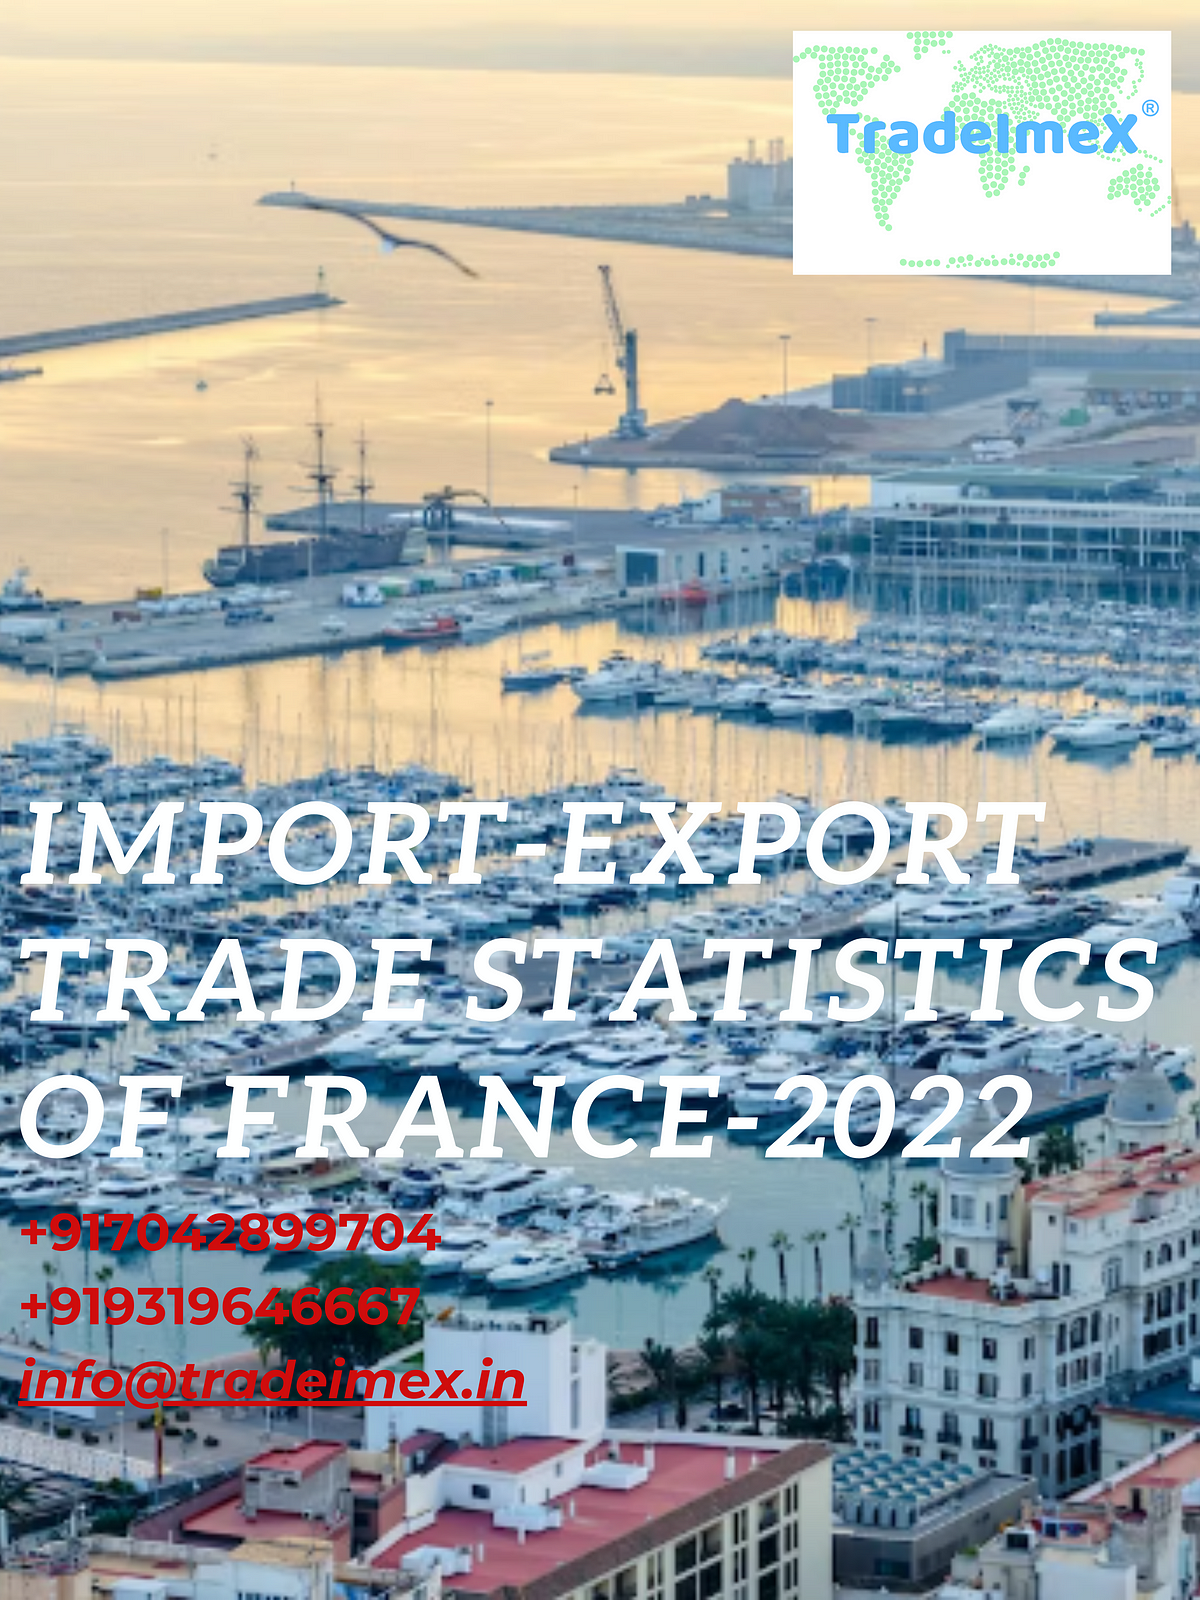 Import-export trade statistics of France-2022 | Medium